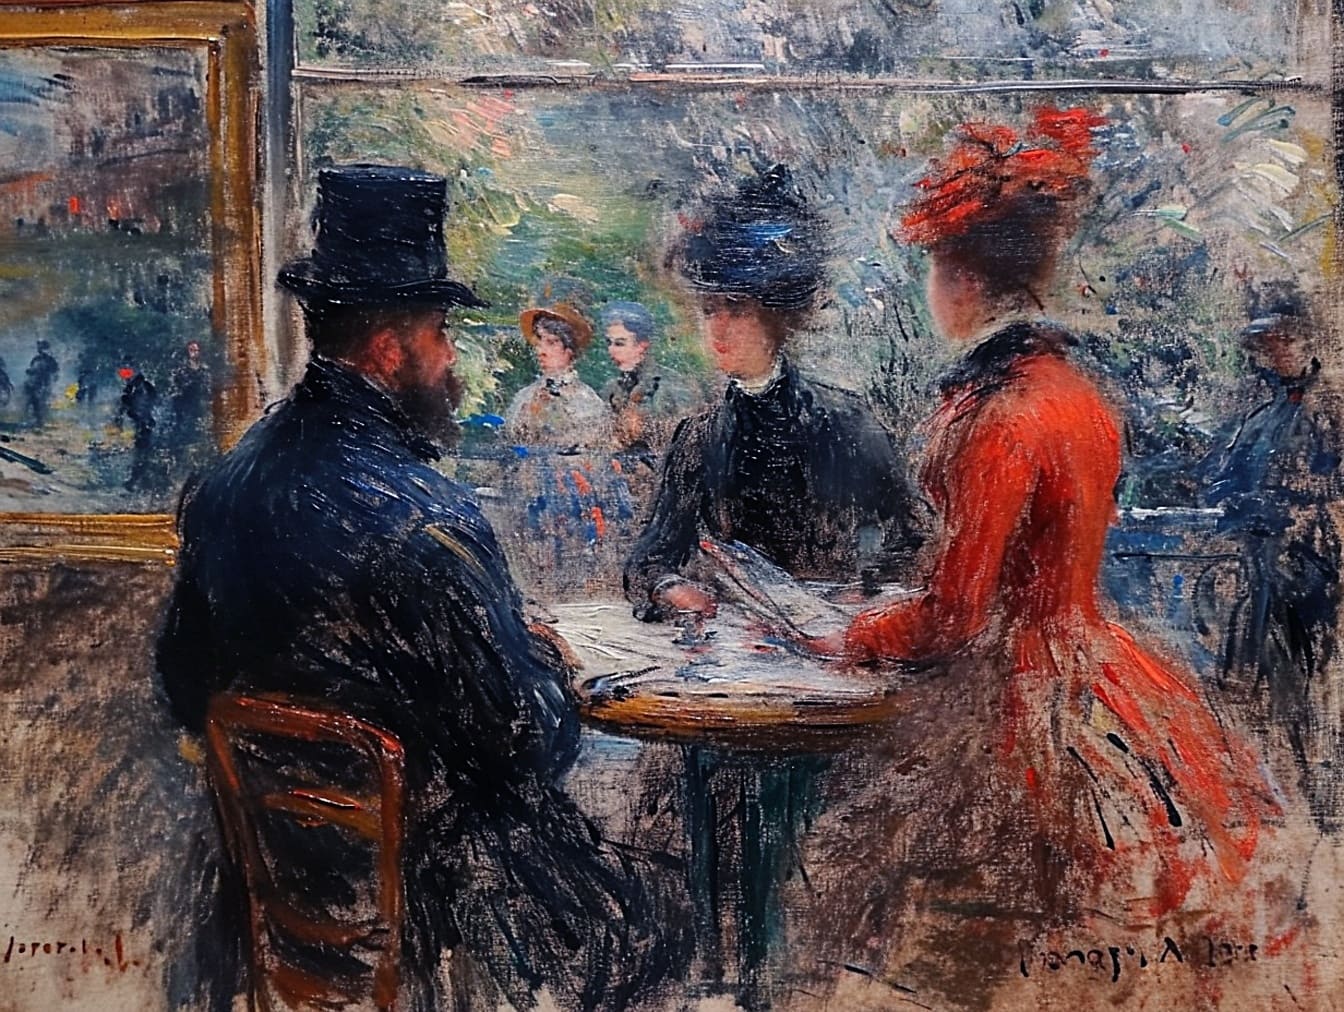 Olajfestmény egy asztalnál ülő embercsoportról, amely 19. századi éttermi hangulatot ábrázol